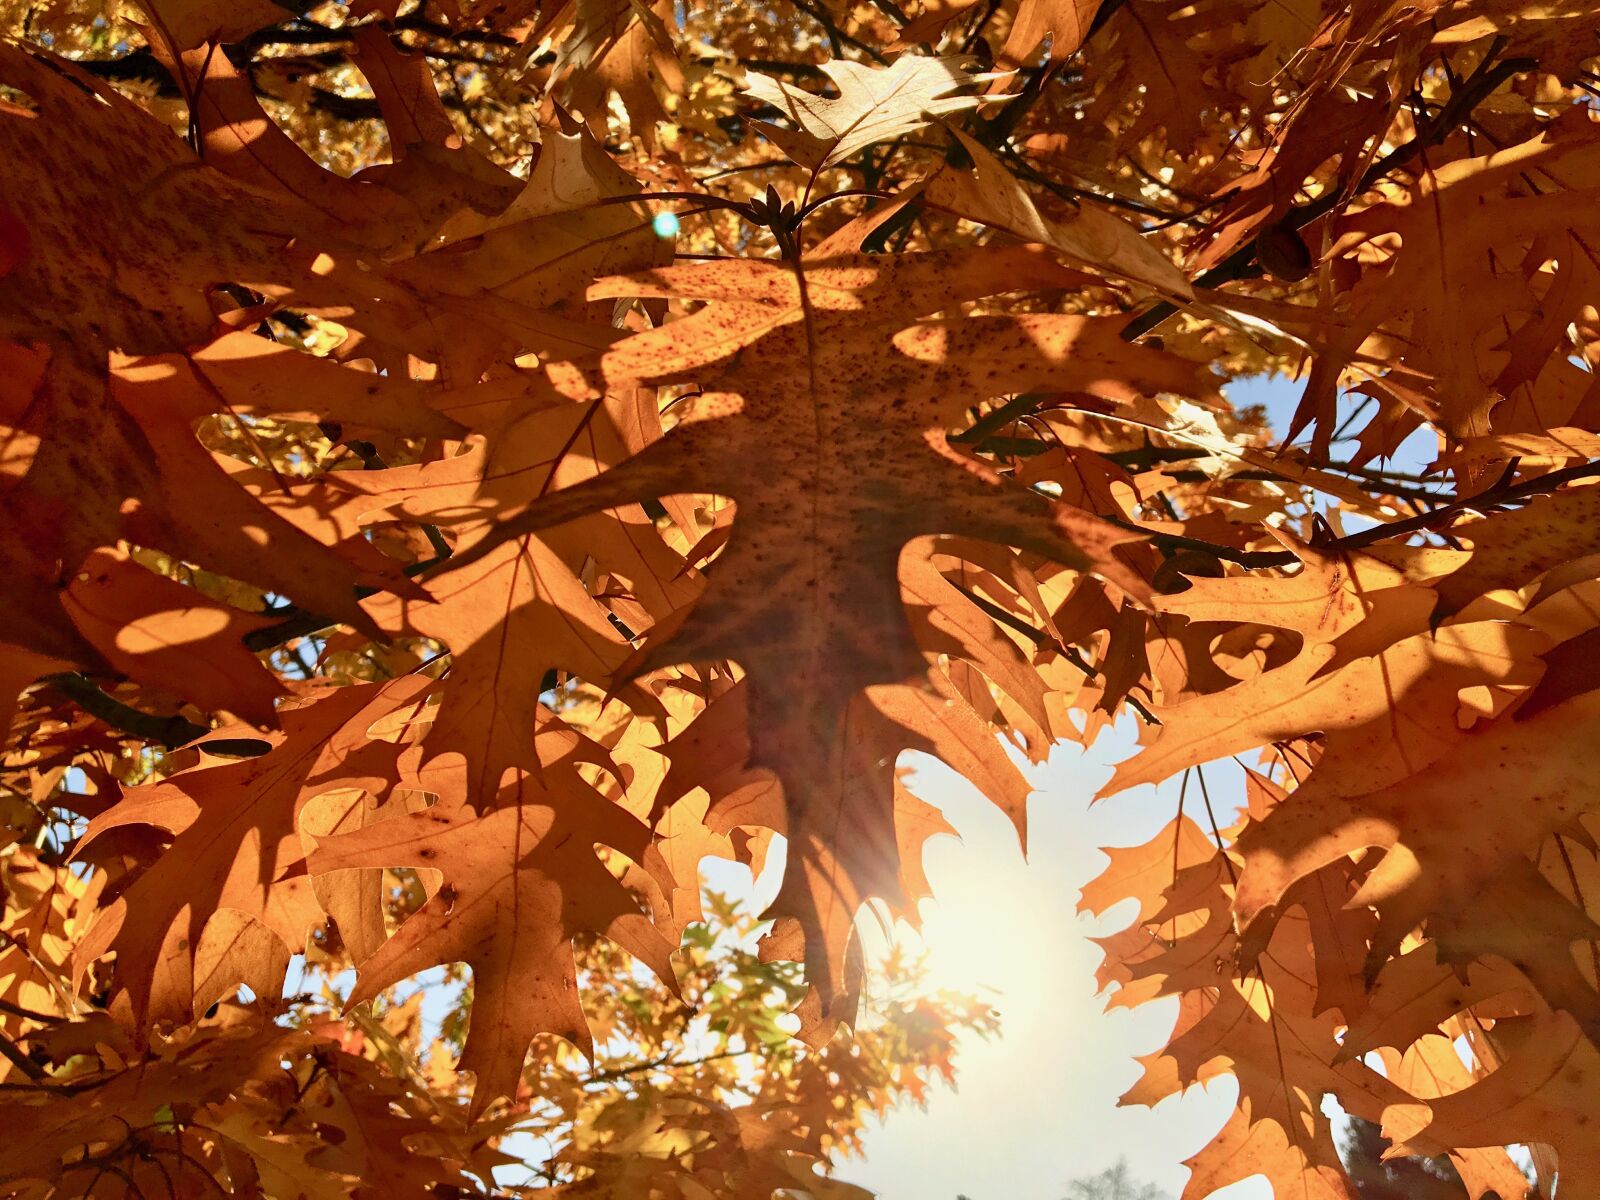 Apple iPhone 6s sample photo. Autumn, fall foliage, orange photography